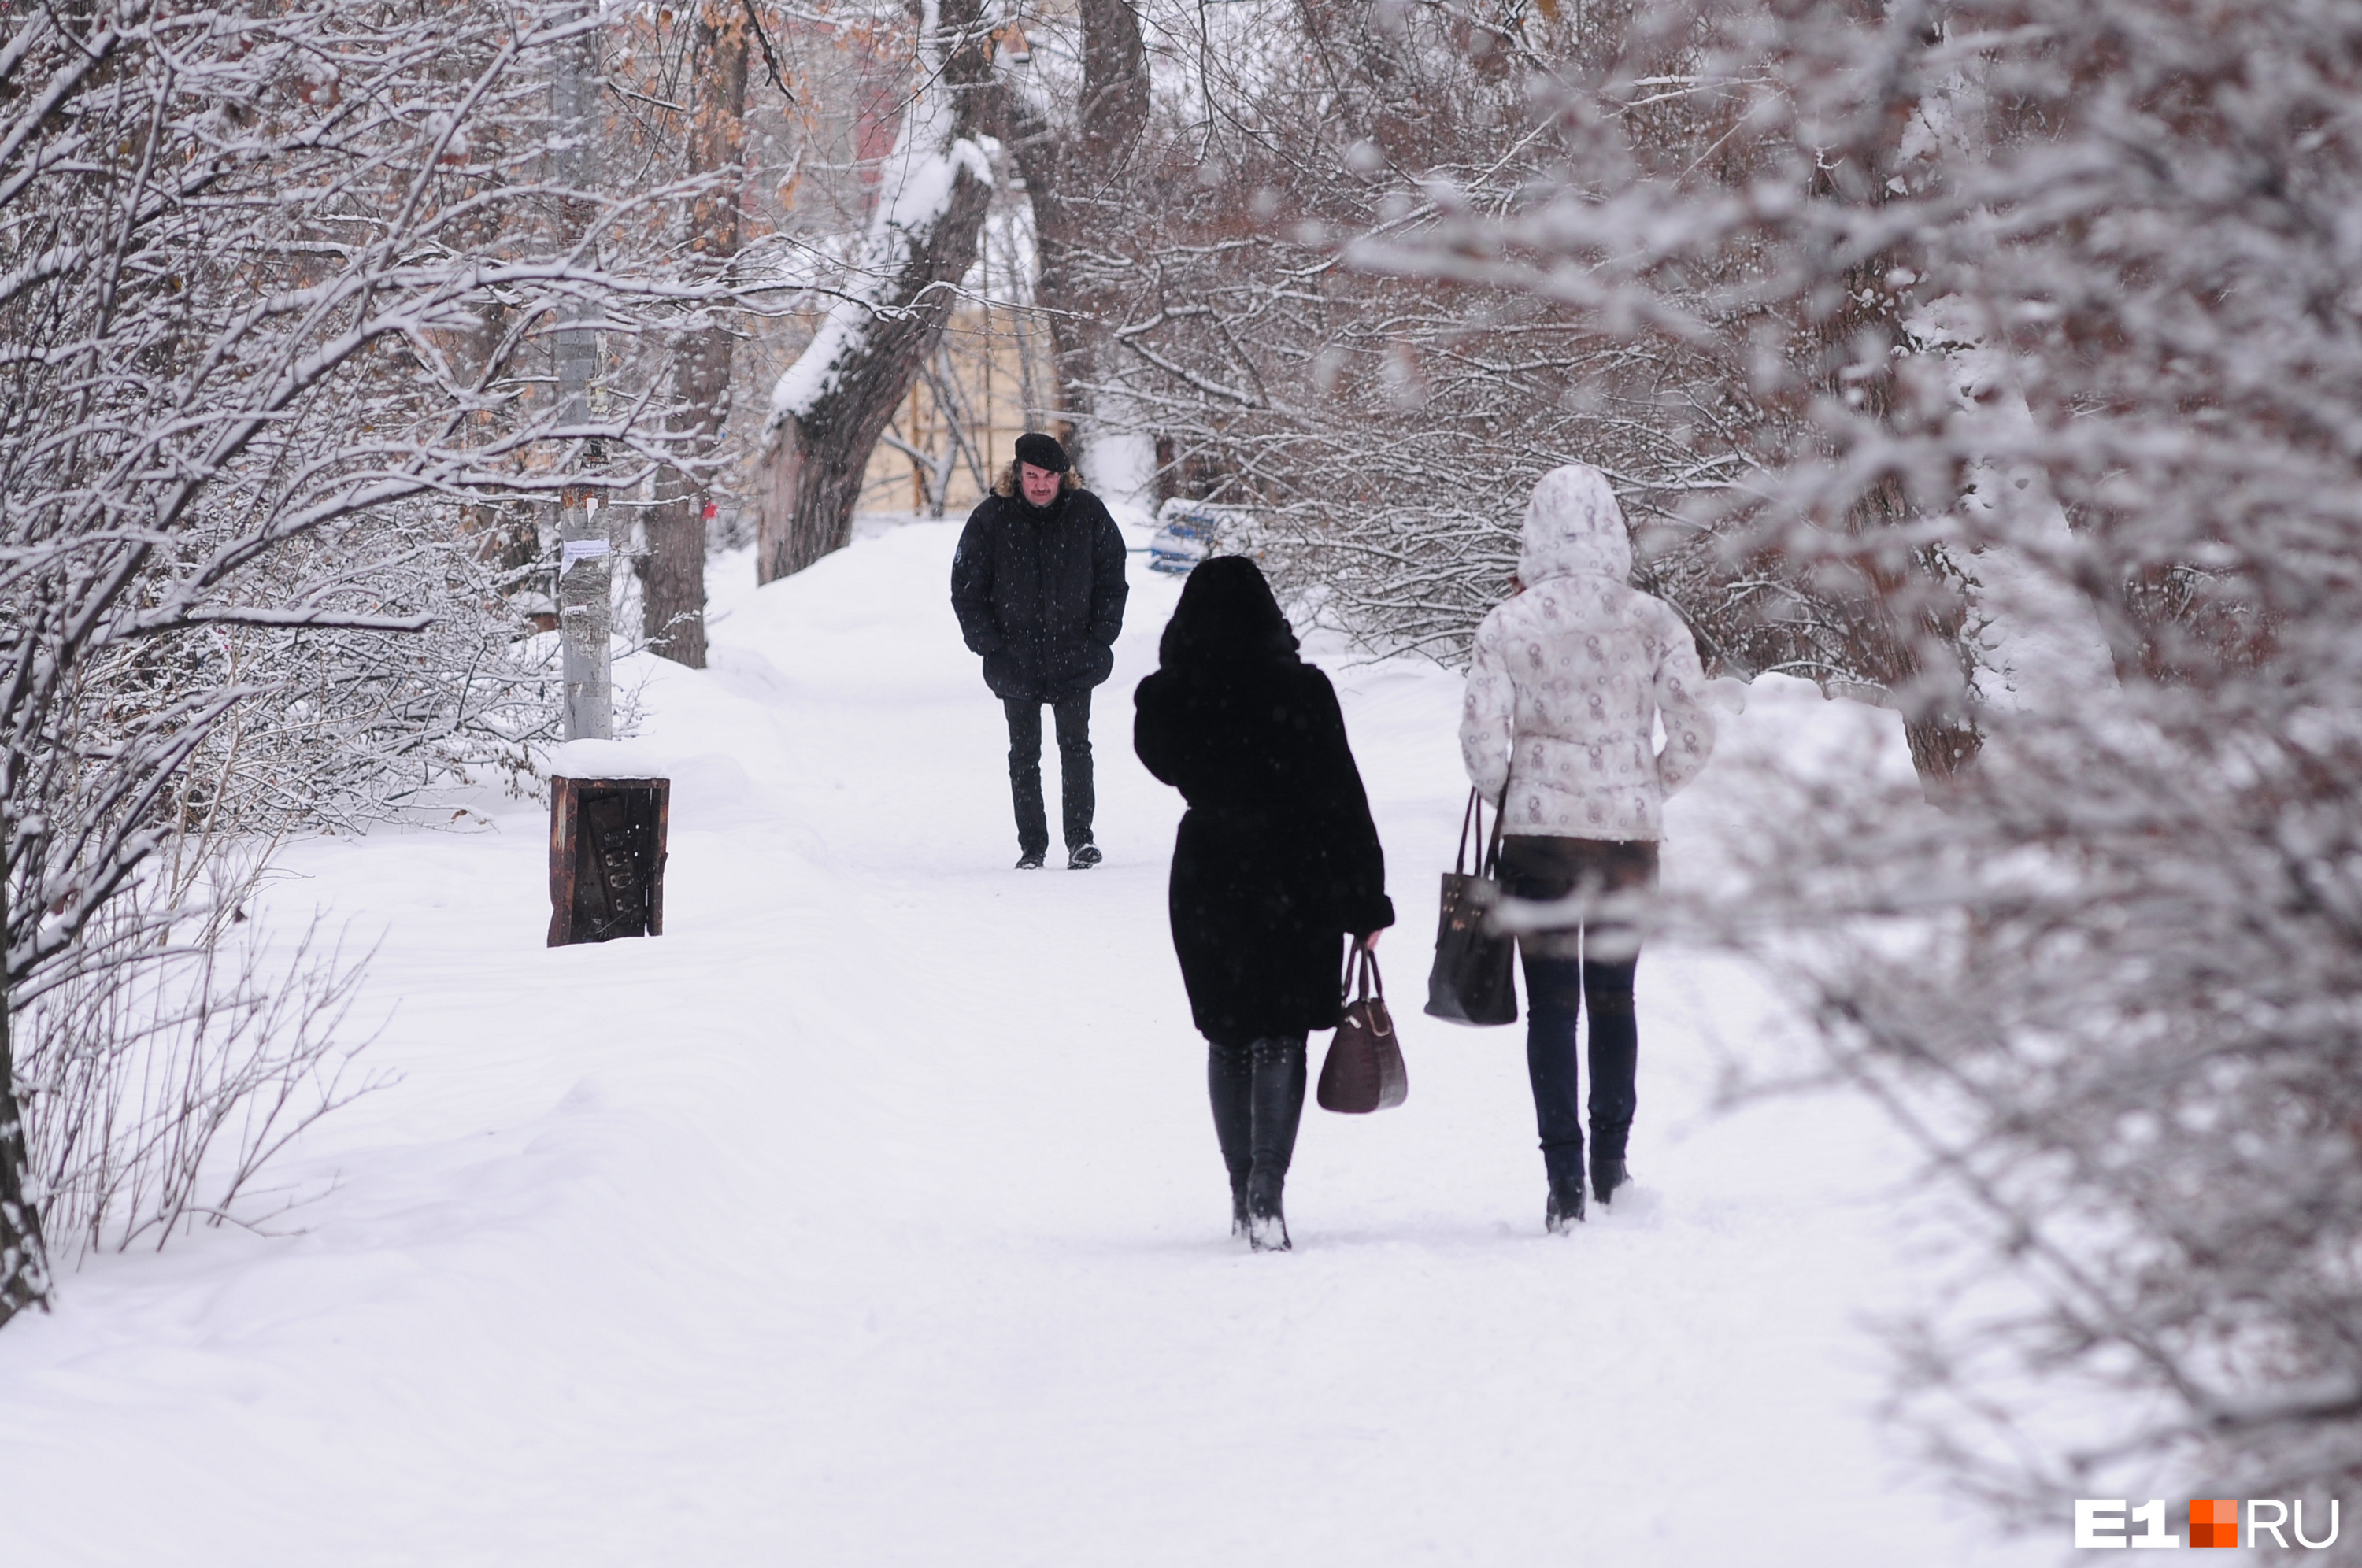 Свердловскую область ждут температурные контрасты. Какой будет погода в ближайшие дни?